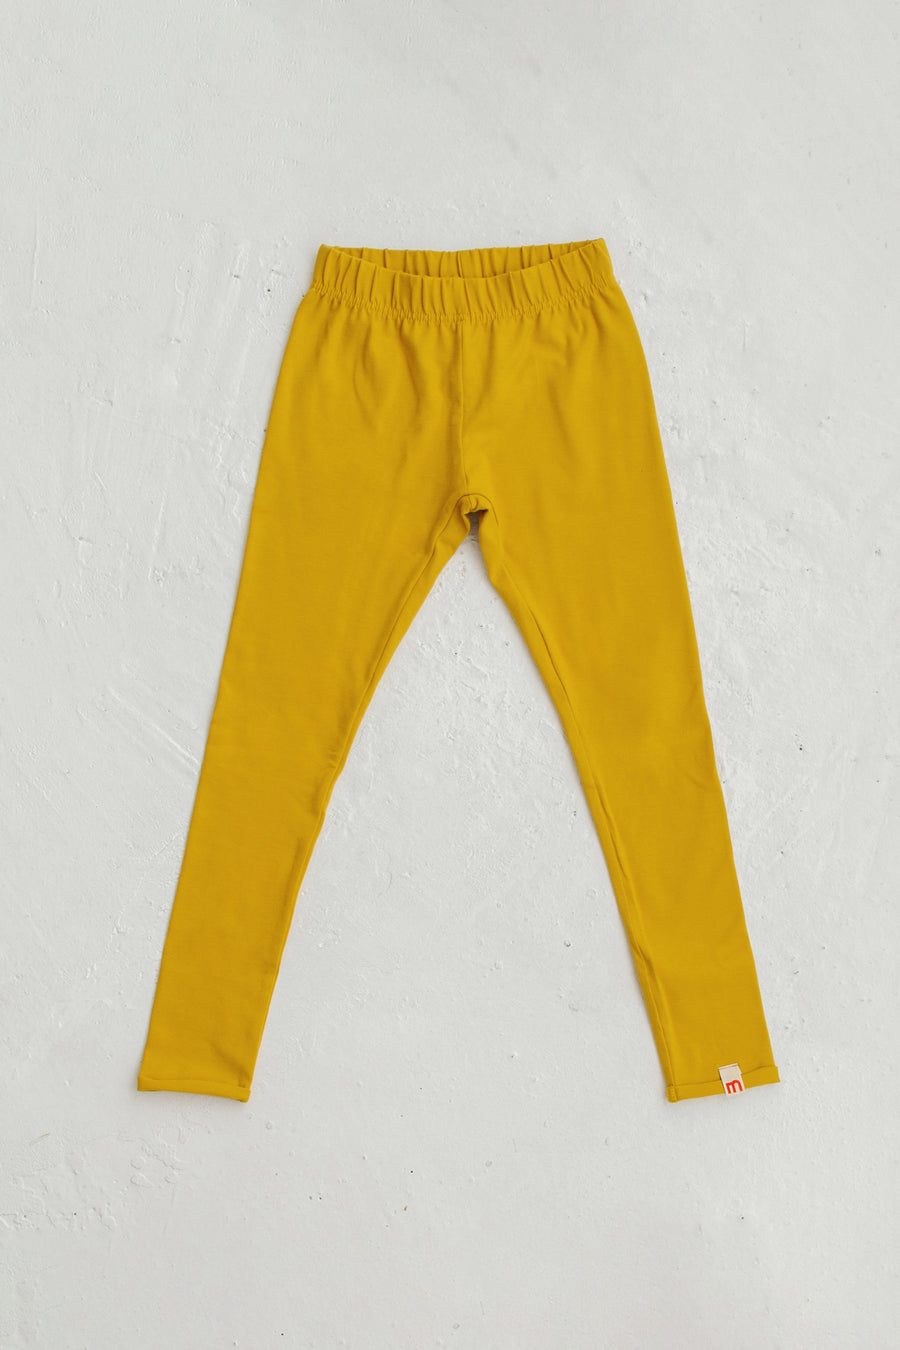 yellow leggings